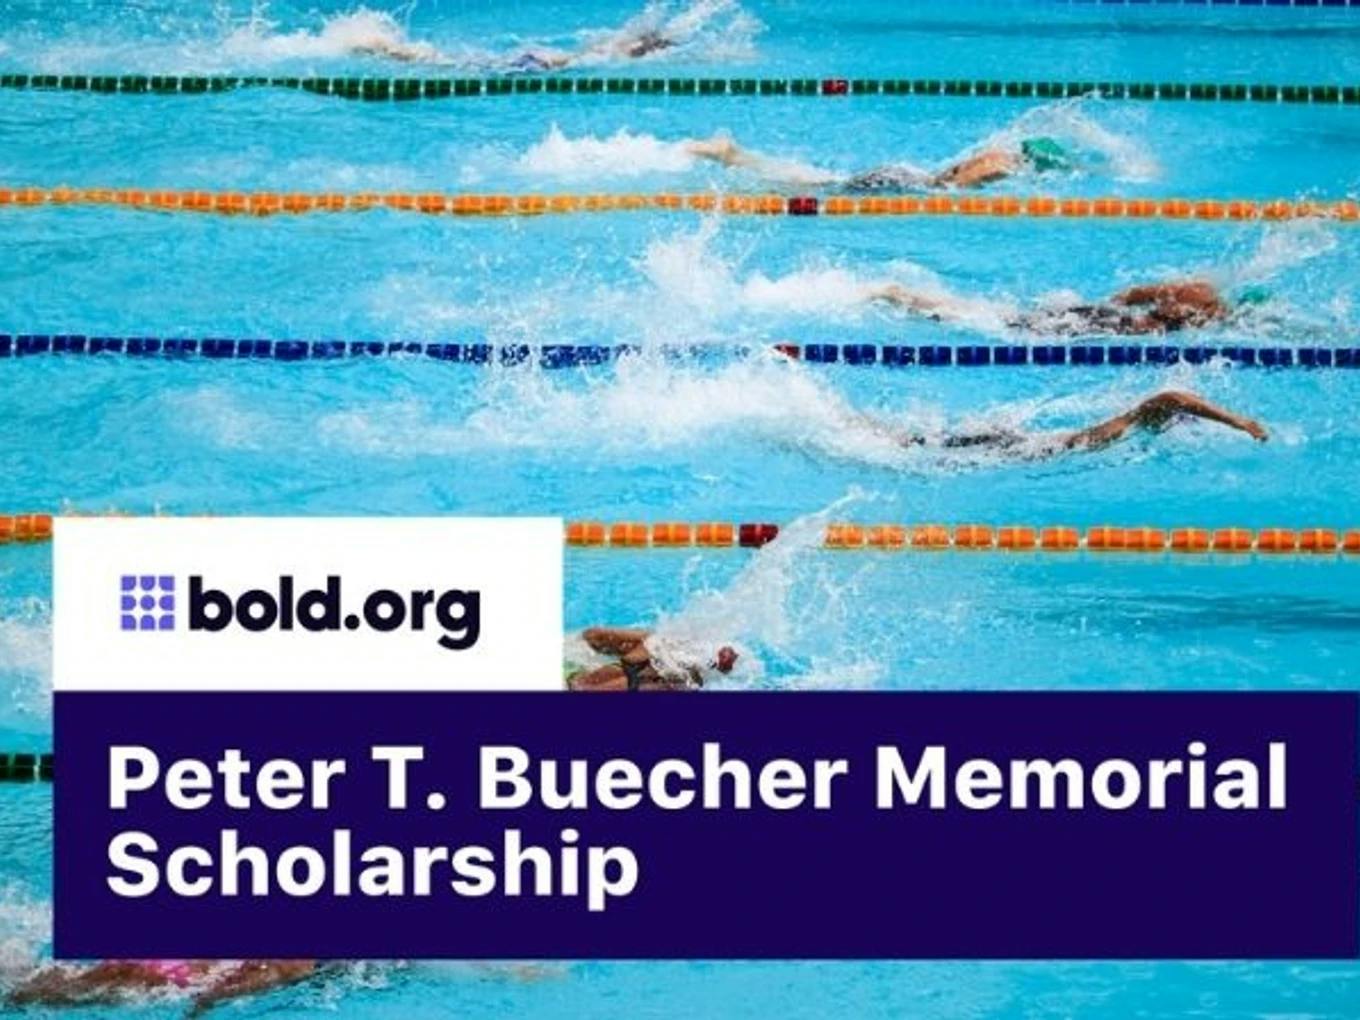 Peter T. Buecher Memorial Scholarship